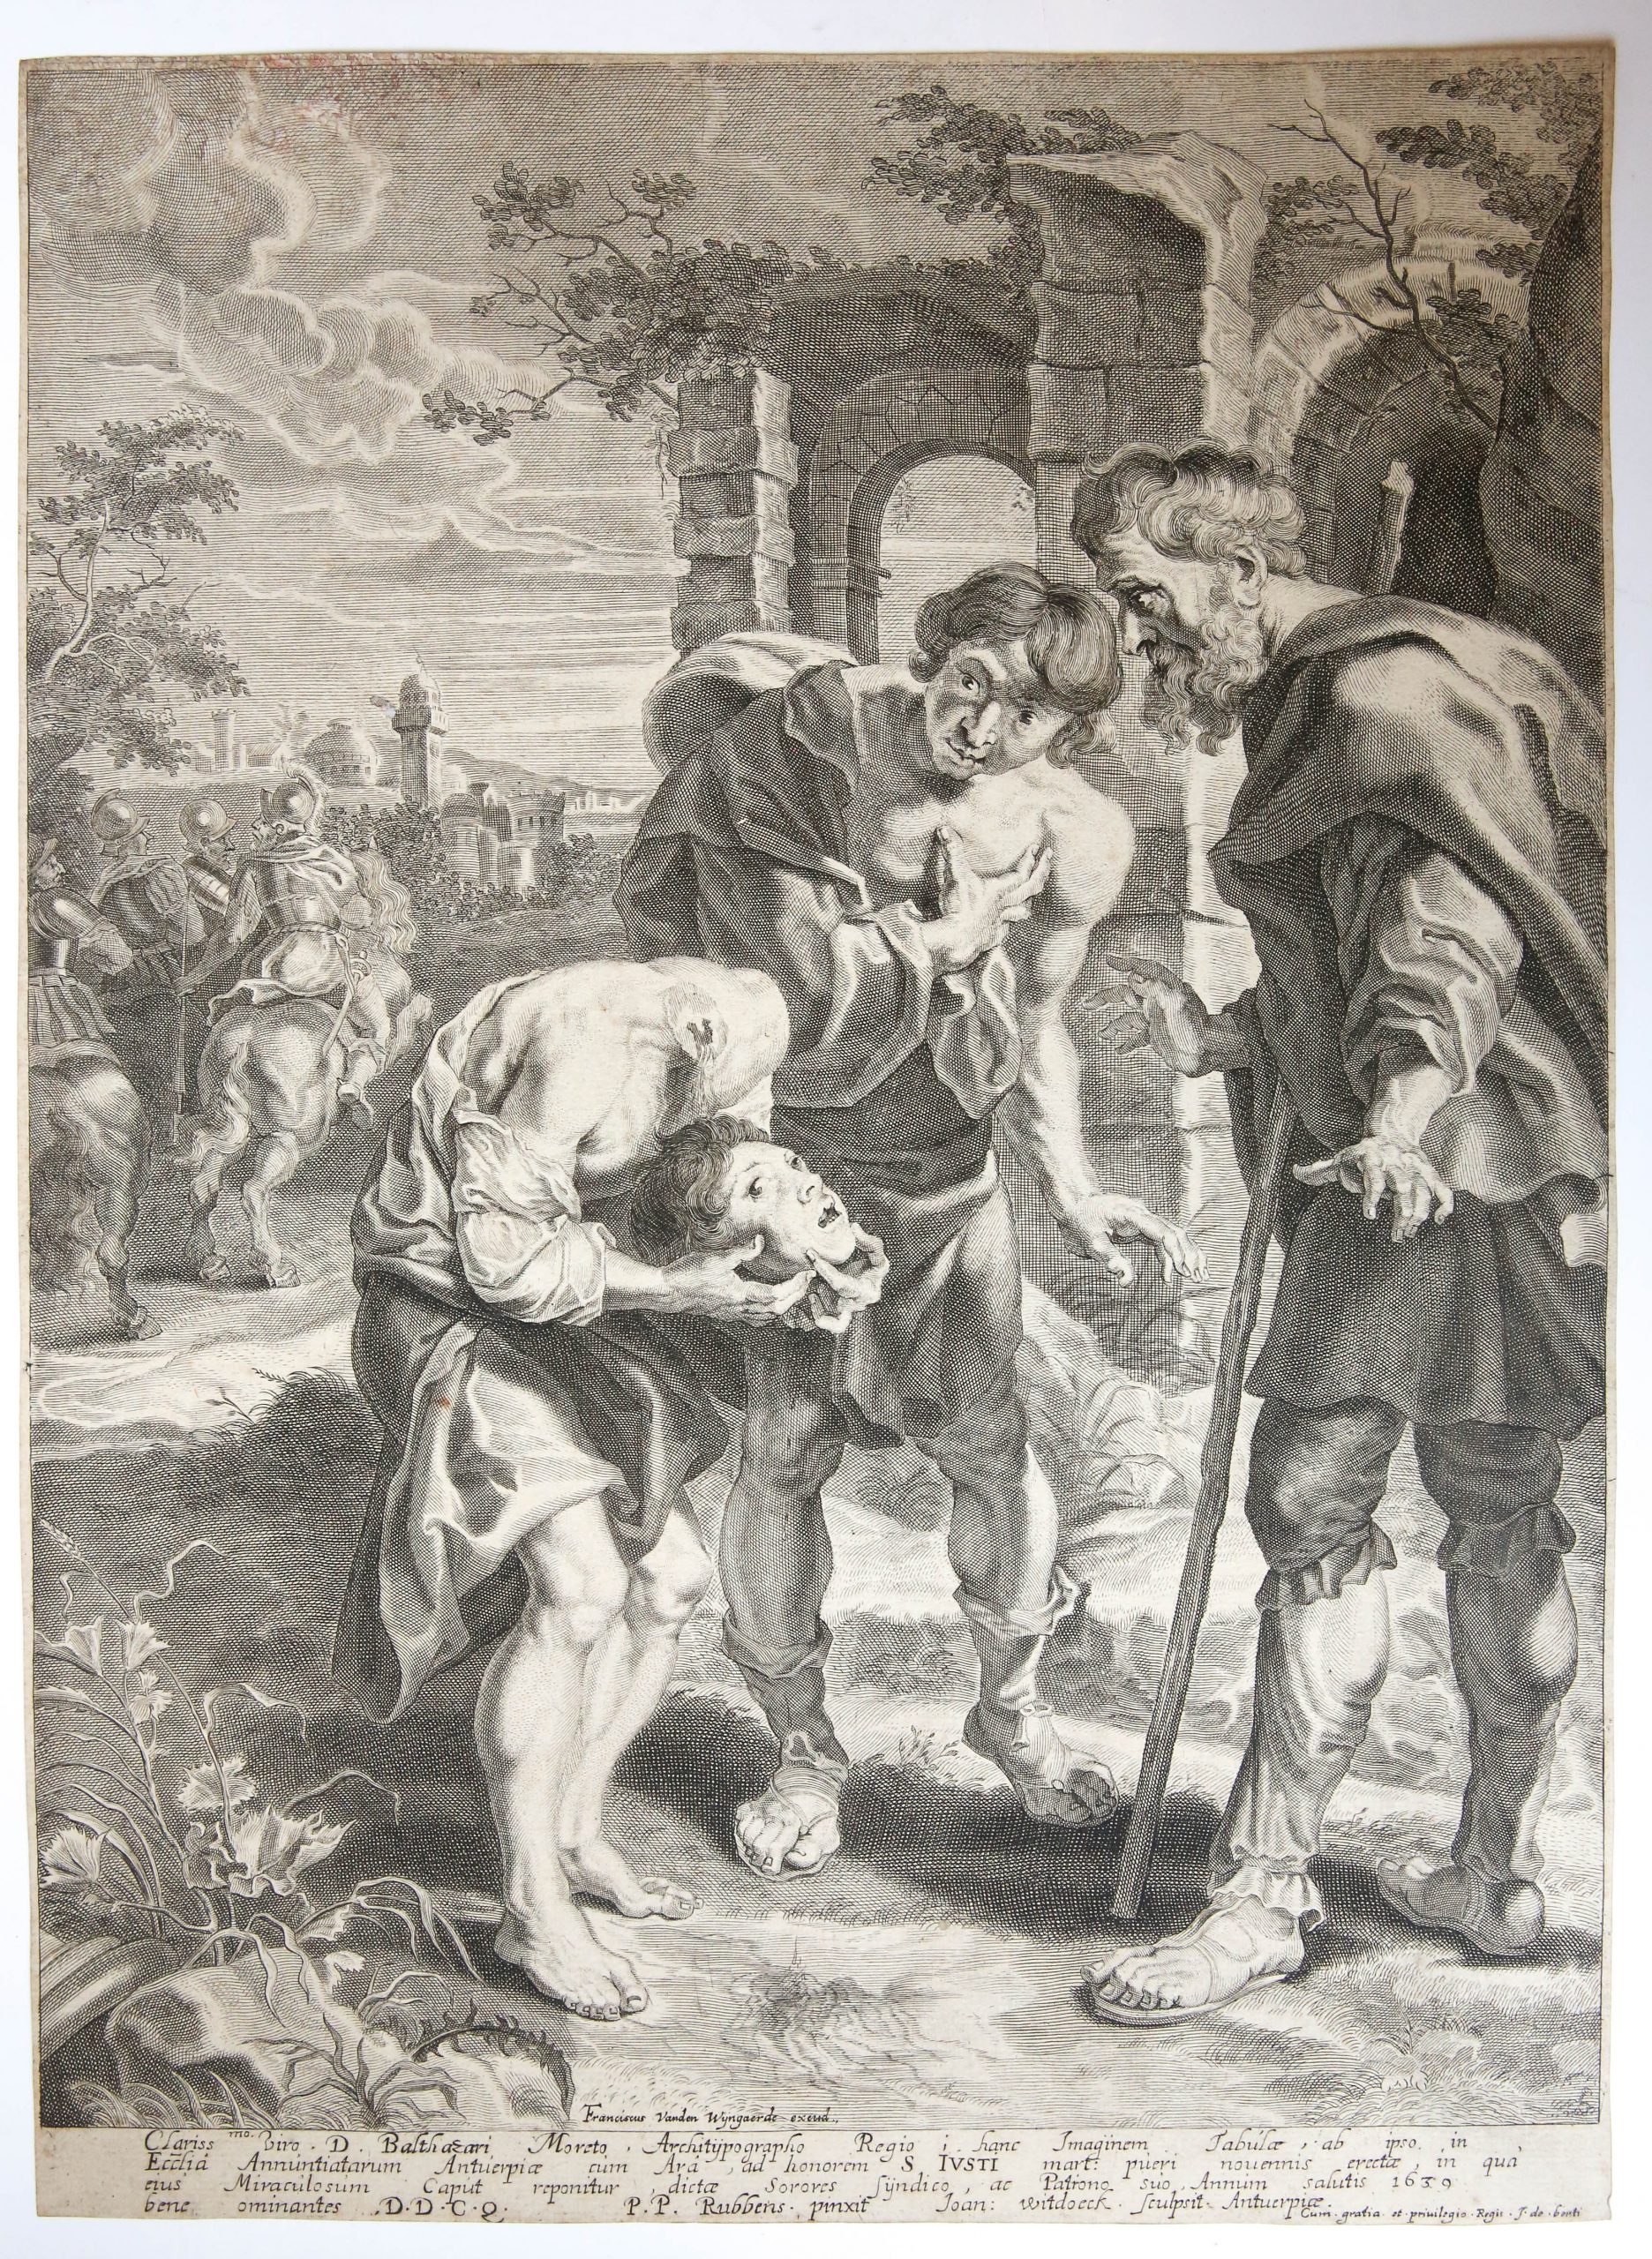 [antique print, engraving] The miracle of St. Justus/het wonder van Sint Justus. 1639.